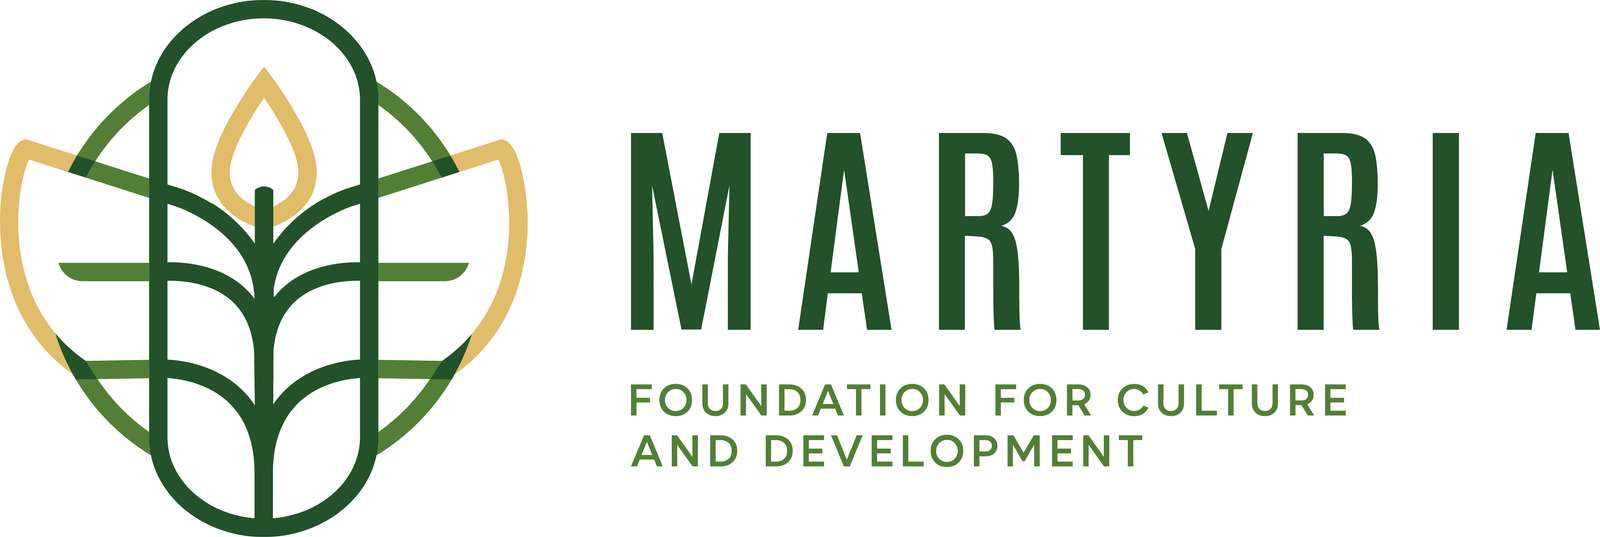 A martyria 43fdgy logója puzzle online fotóról